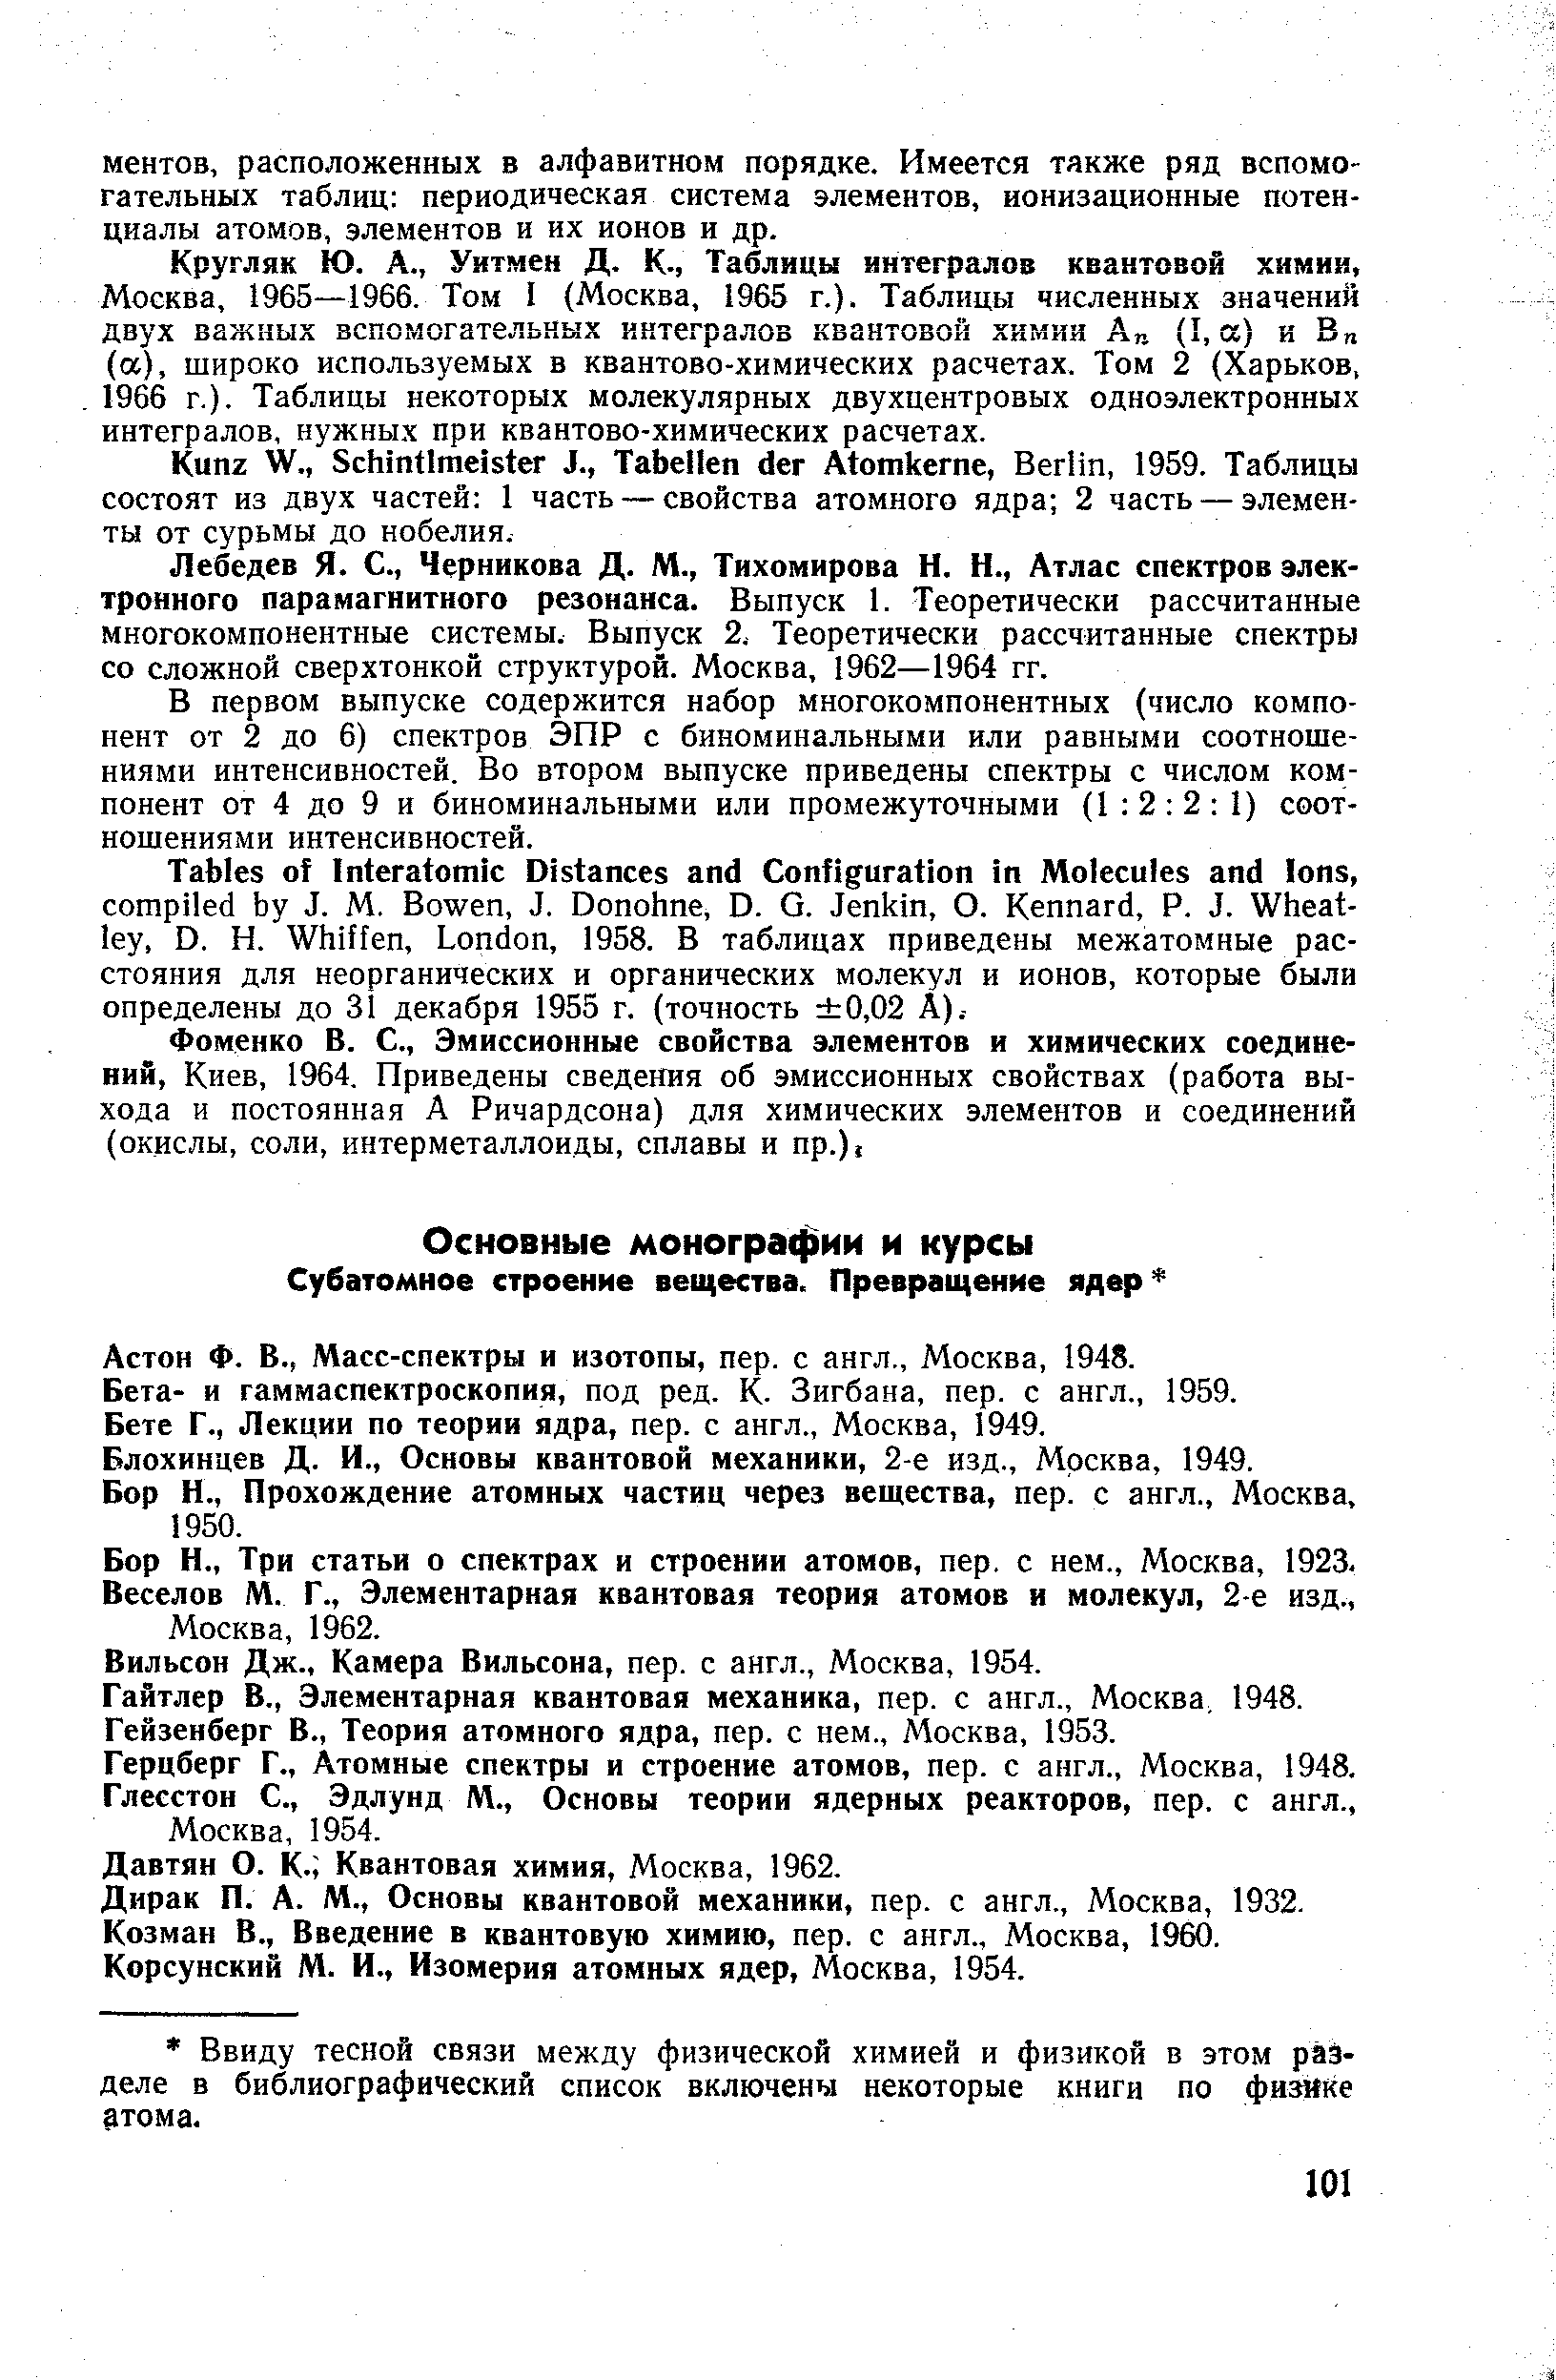 Астон Ф. В., Масс-спектры и изотопы, пер. с англ., Москва, 1948.